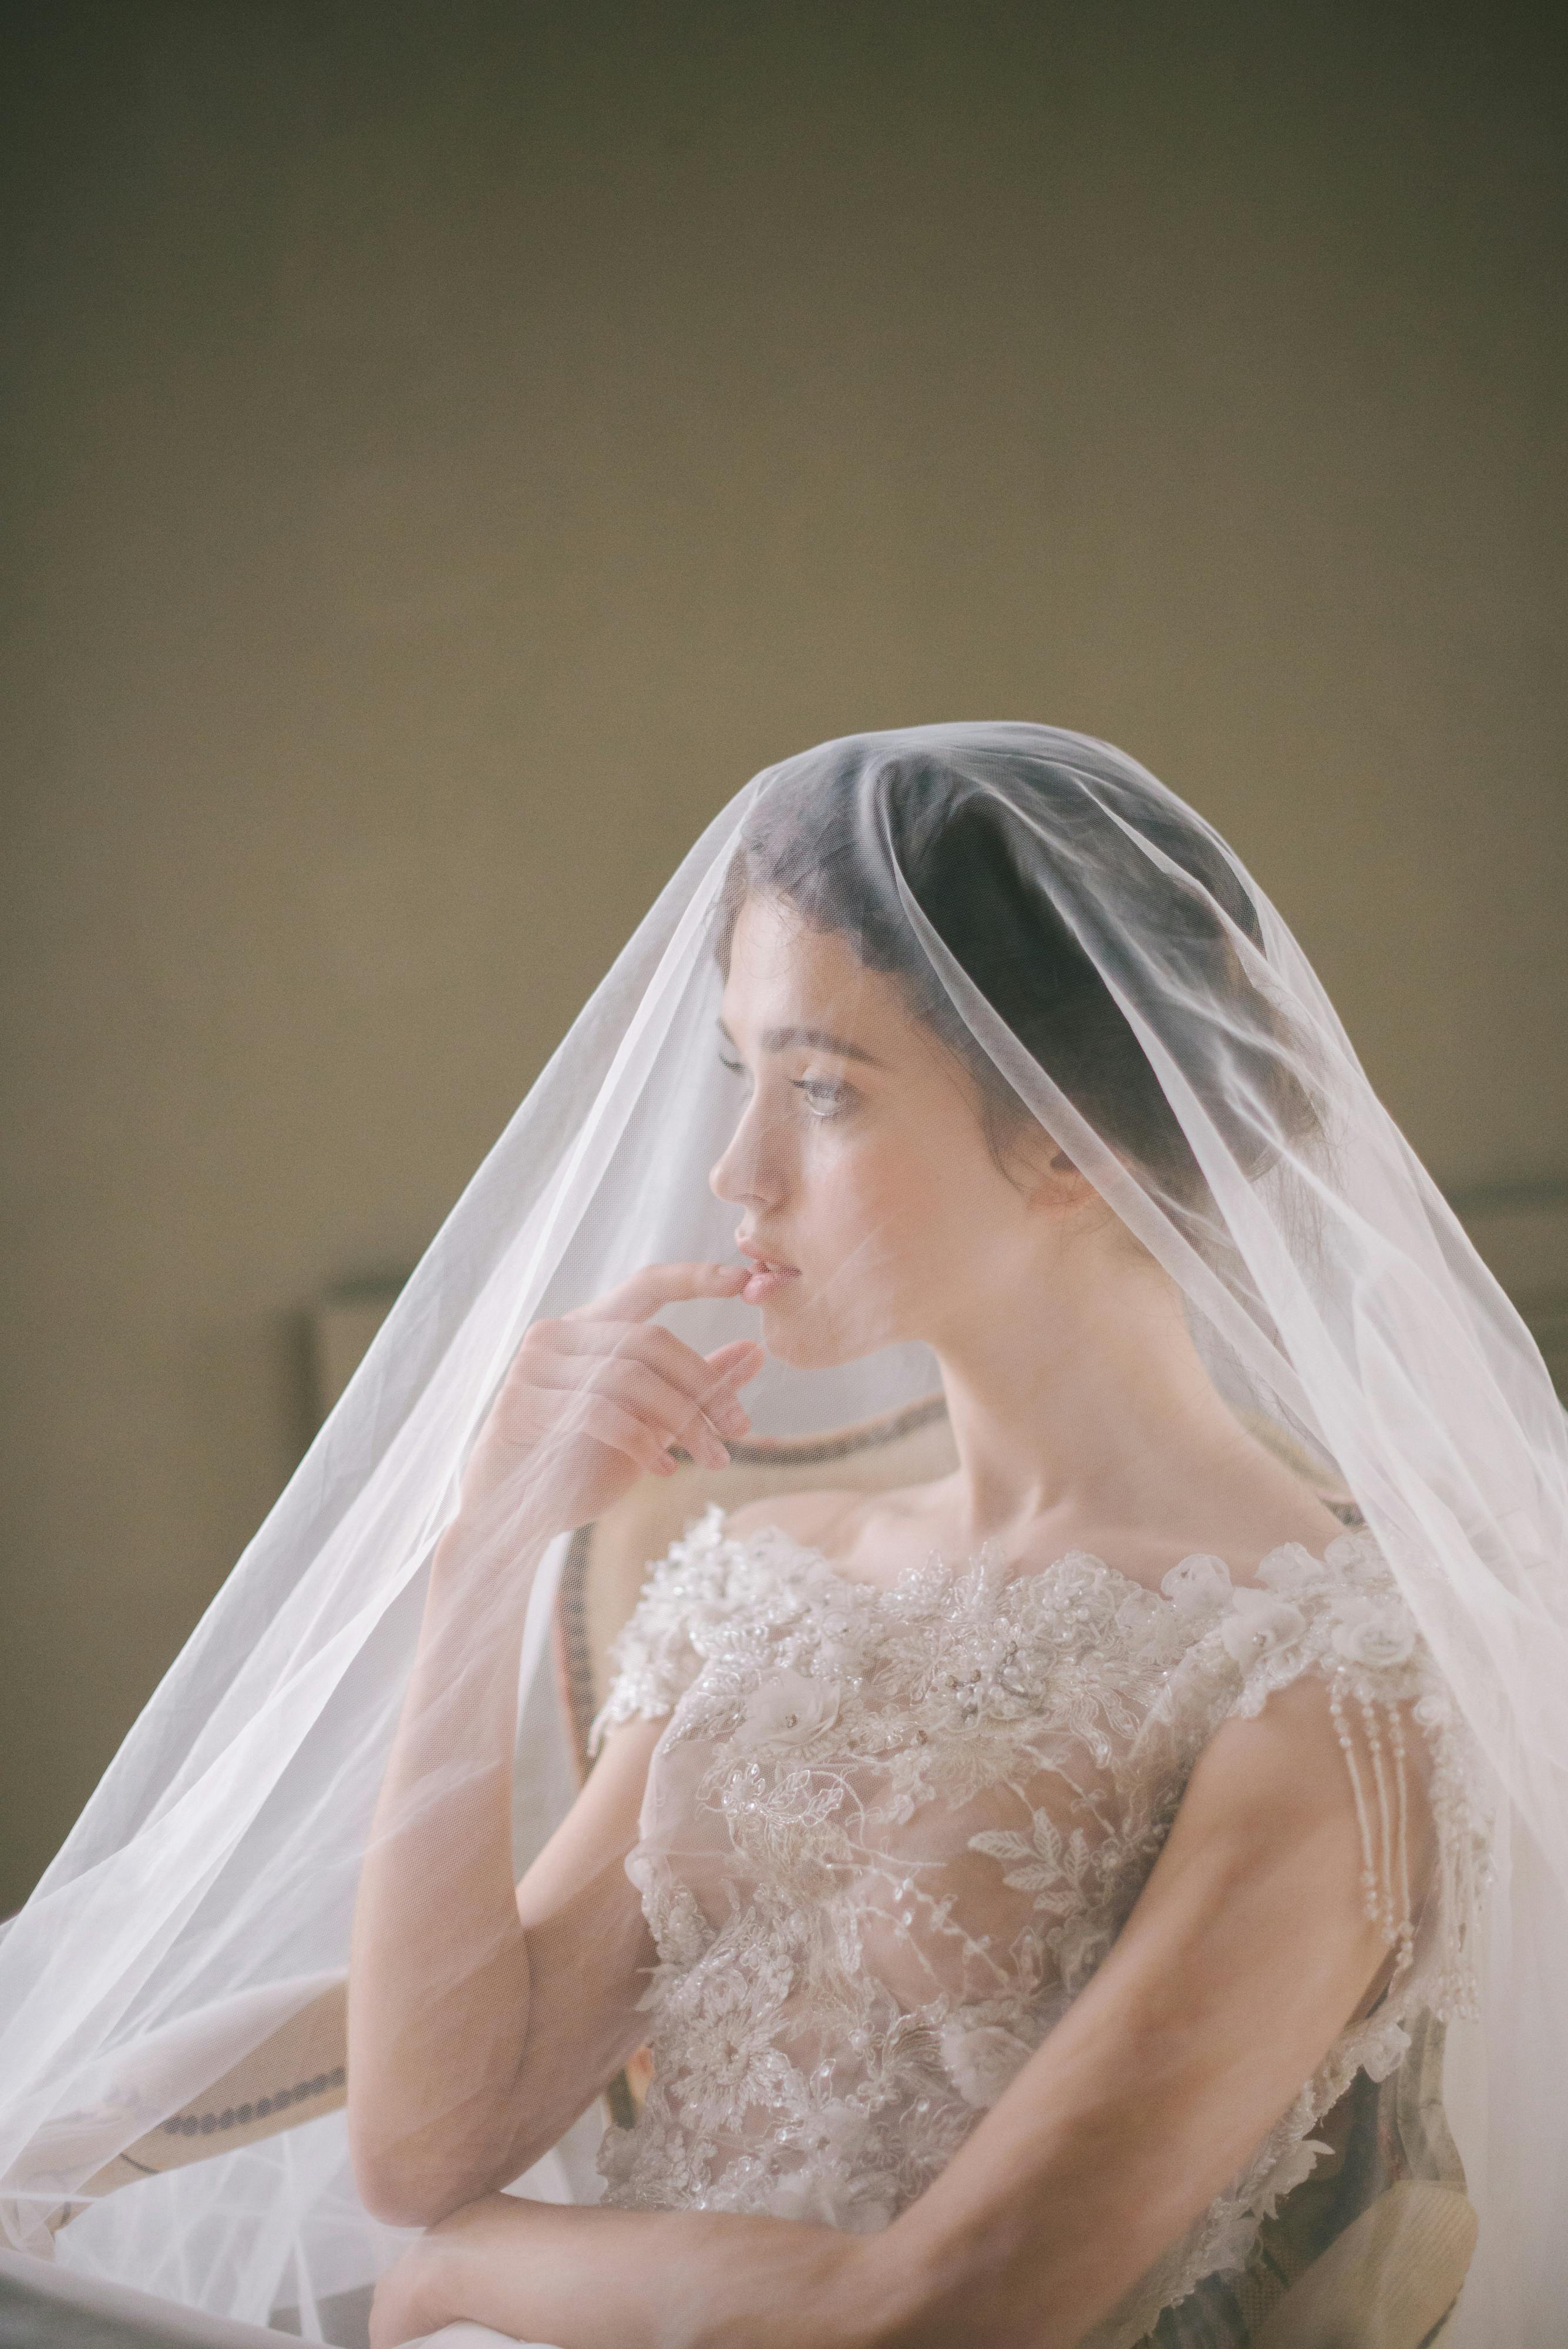 Una novia con un precioso vestido contempla su próxima boda | Fuente: Pexels